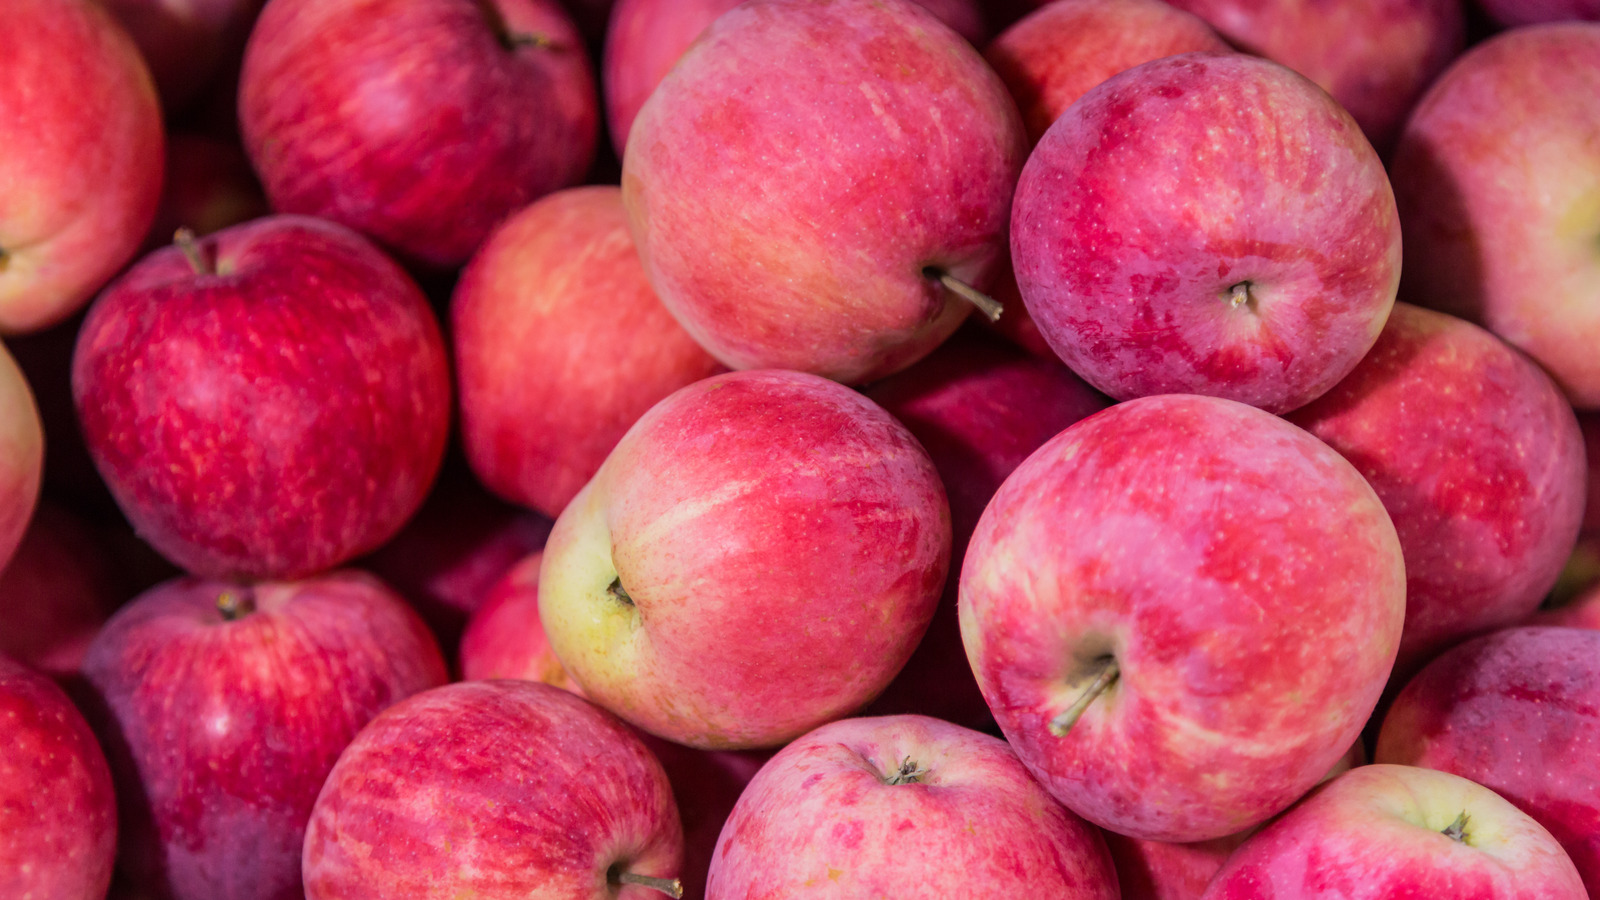 لماذا يحتوي التفاح الموجود في متاجر البقالة على هذه الطبقة الرقيقة من الشمع؟